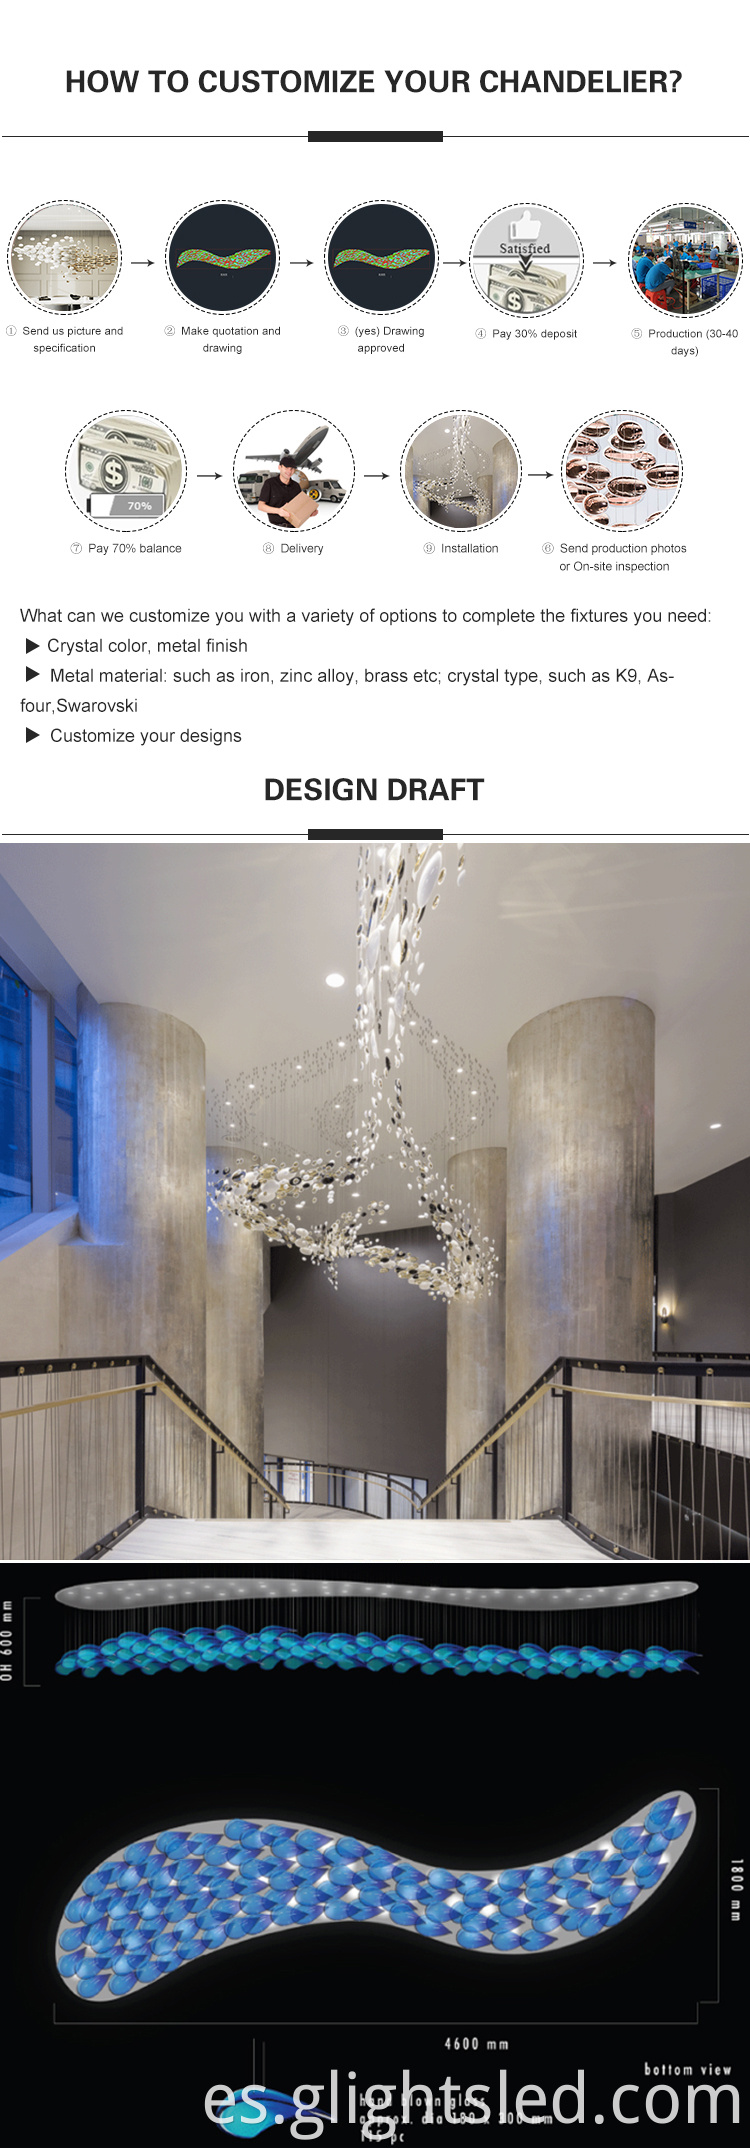 Gran hotel personalizado decorado con cuentas de cristal de lujo que cuelgan la ingeniería de iluminación colgante llevada